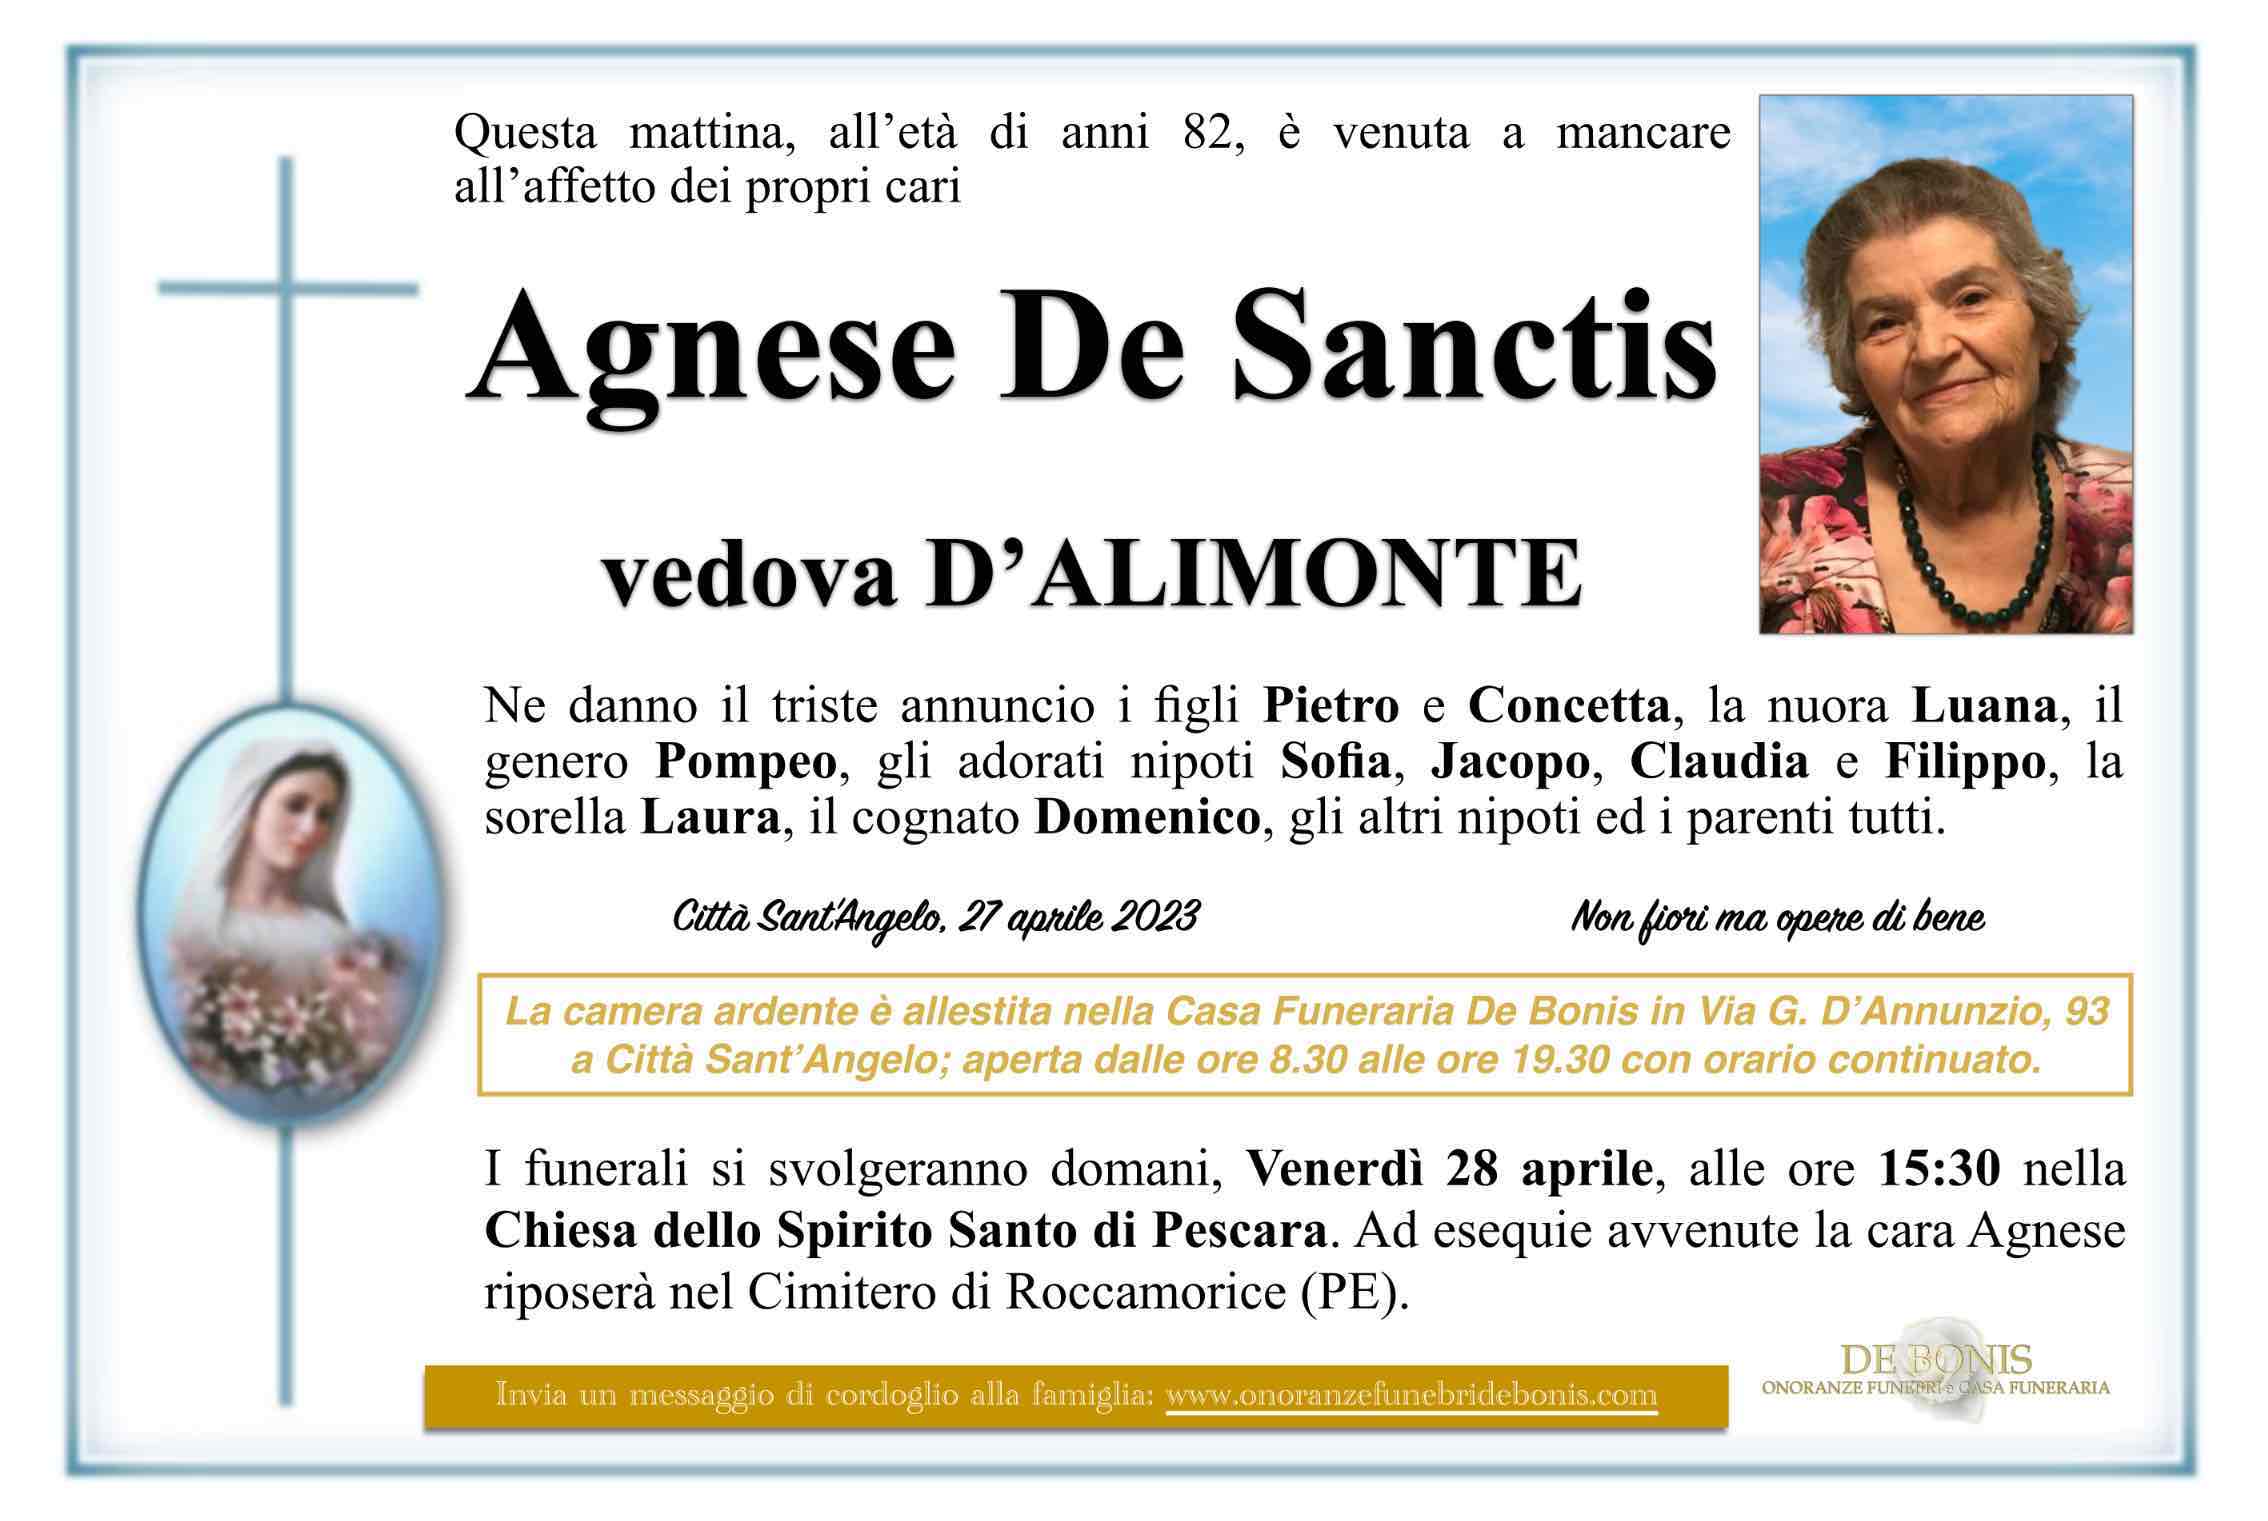 Agnese De Sanctis